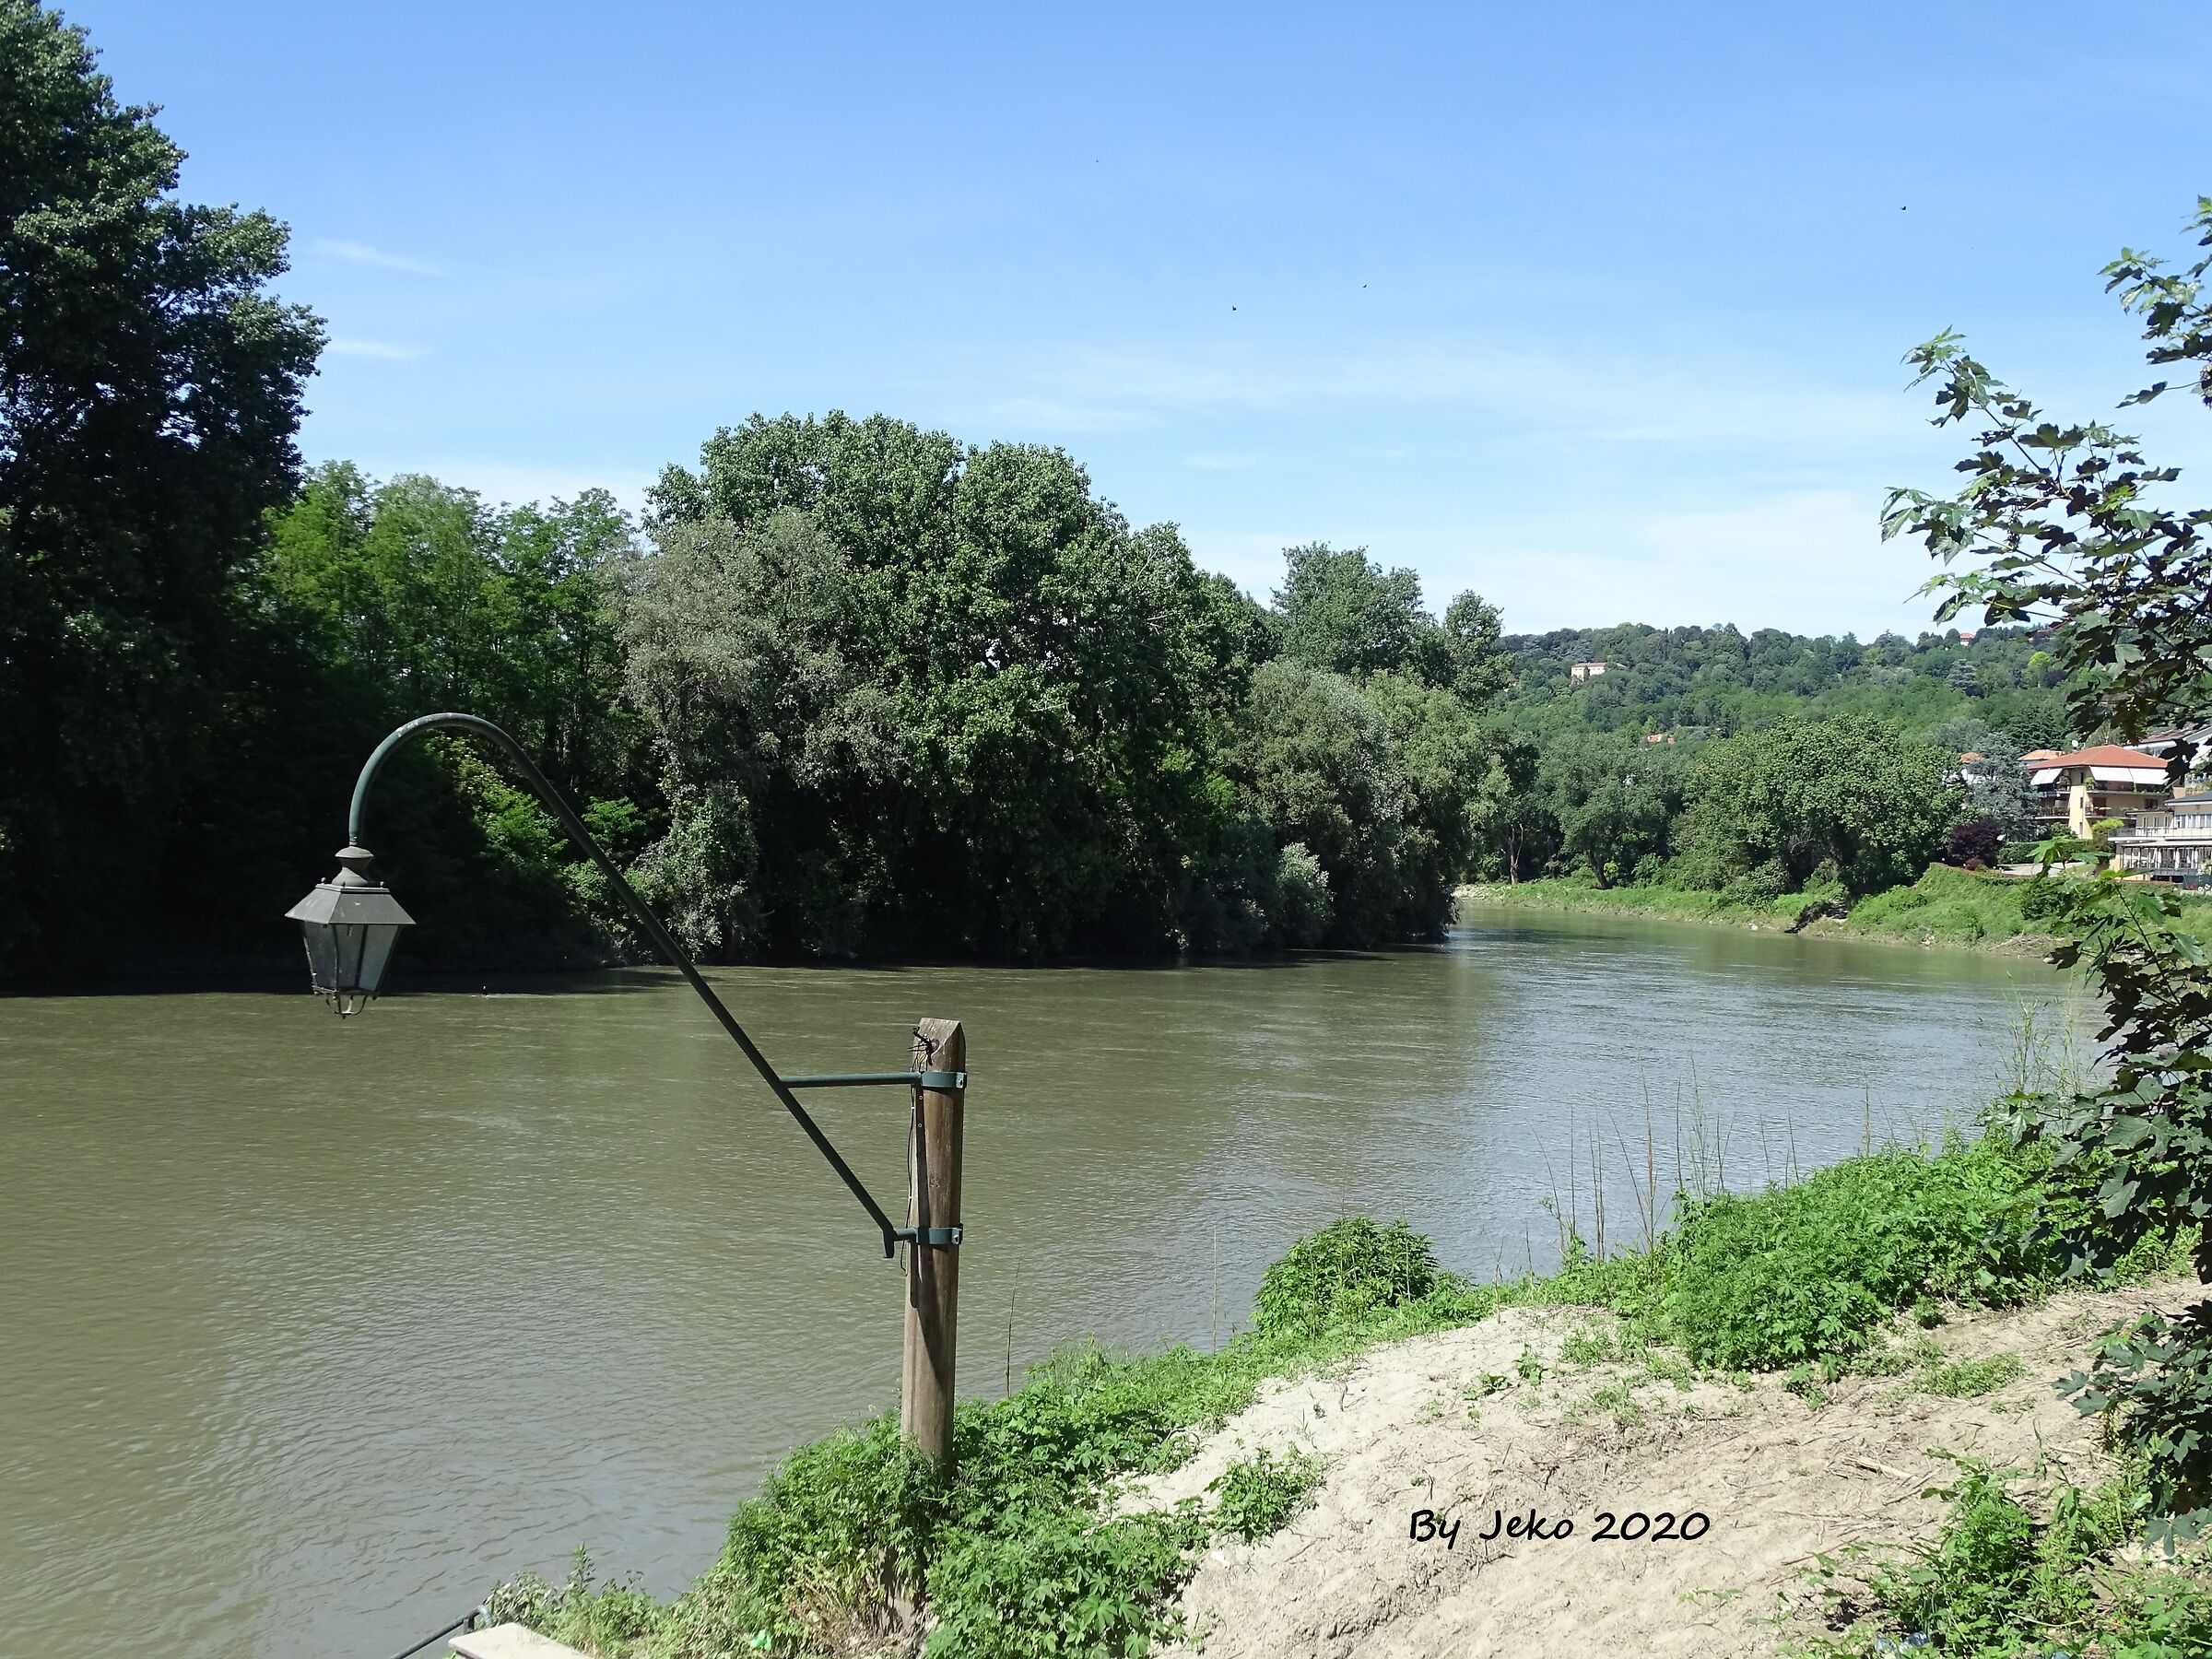 River Po seen by Moncalieri 24-05-2020...